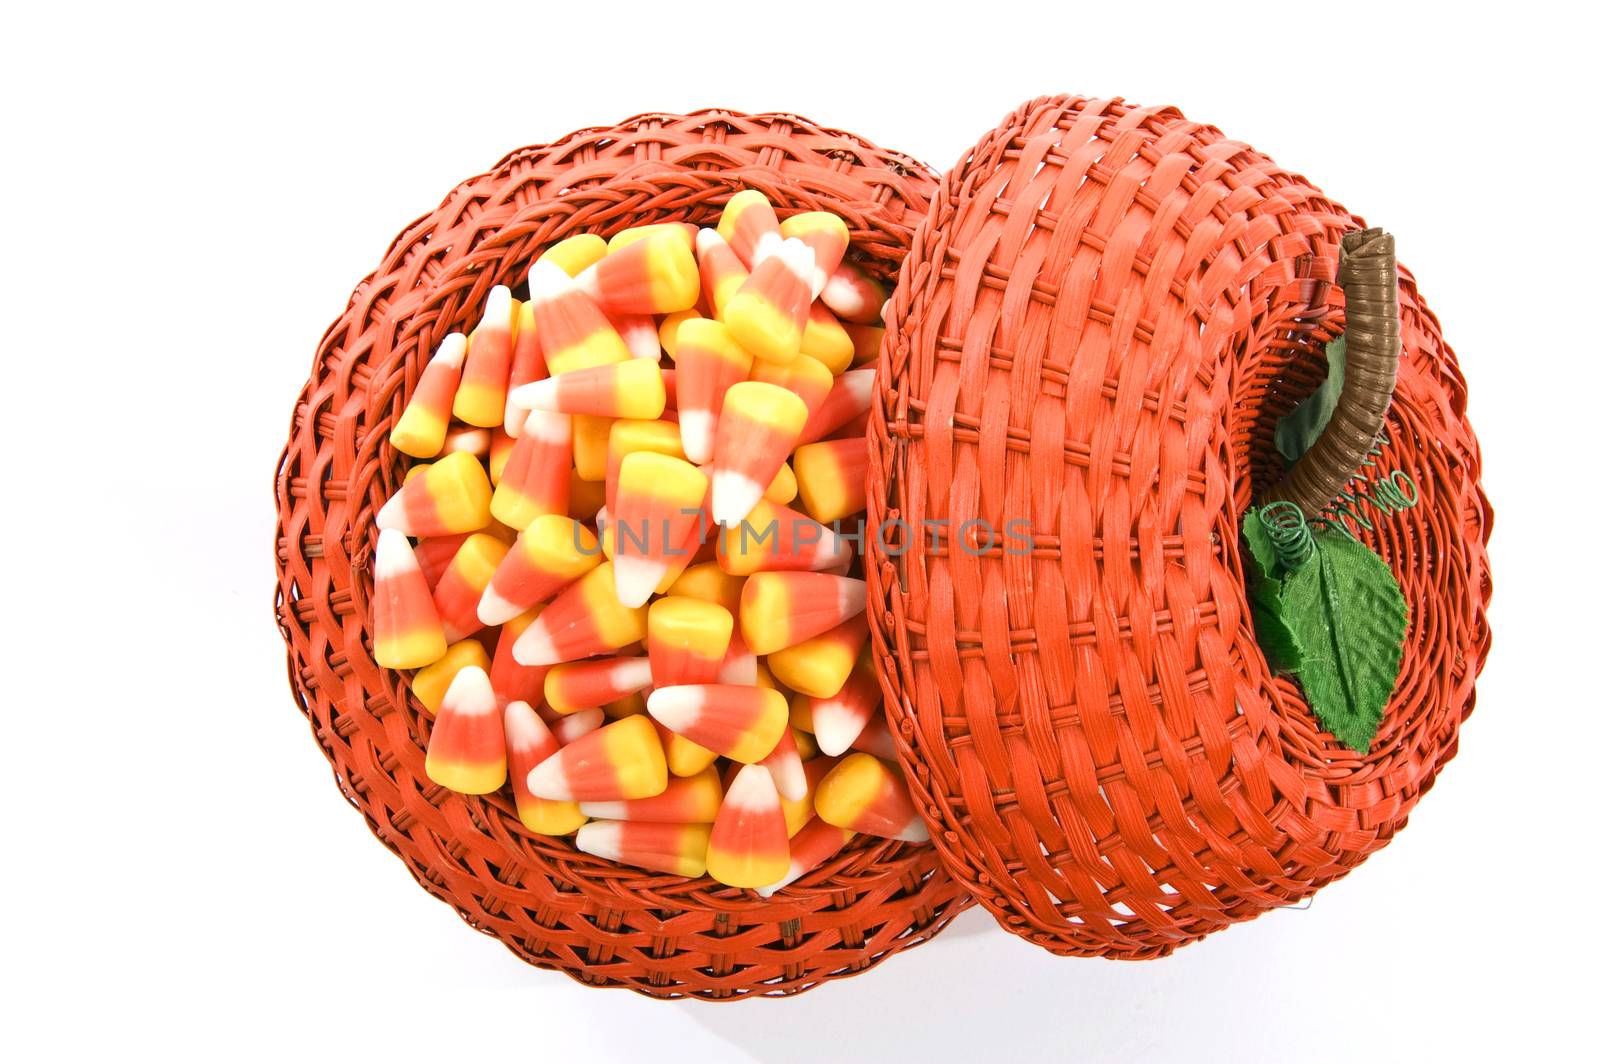 Wicker Pumpkin Basket Full Of Candy Corn by stockbuster1